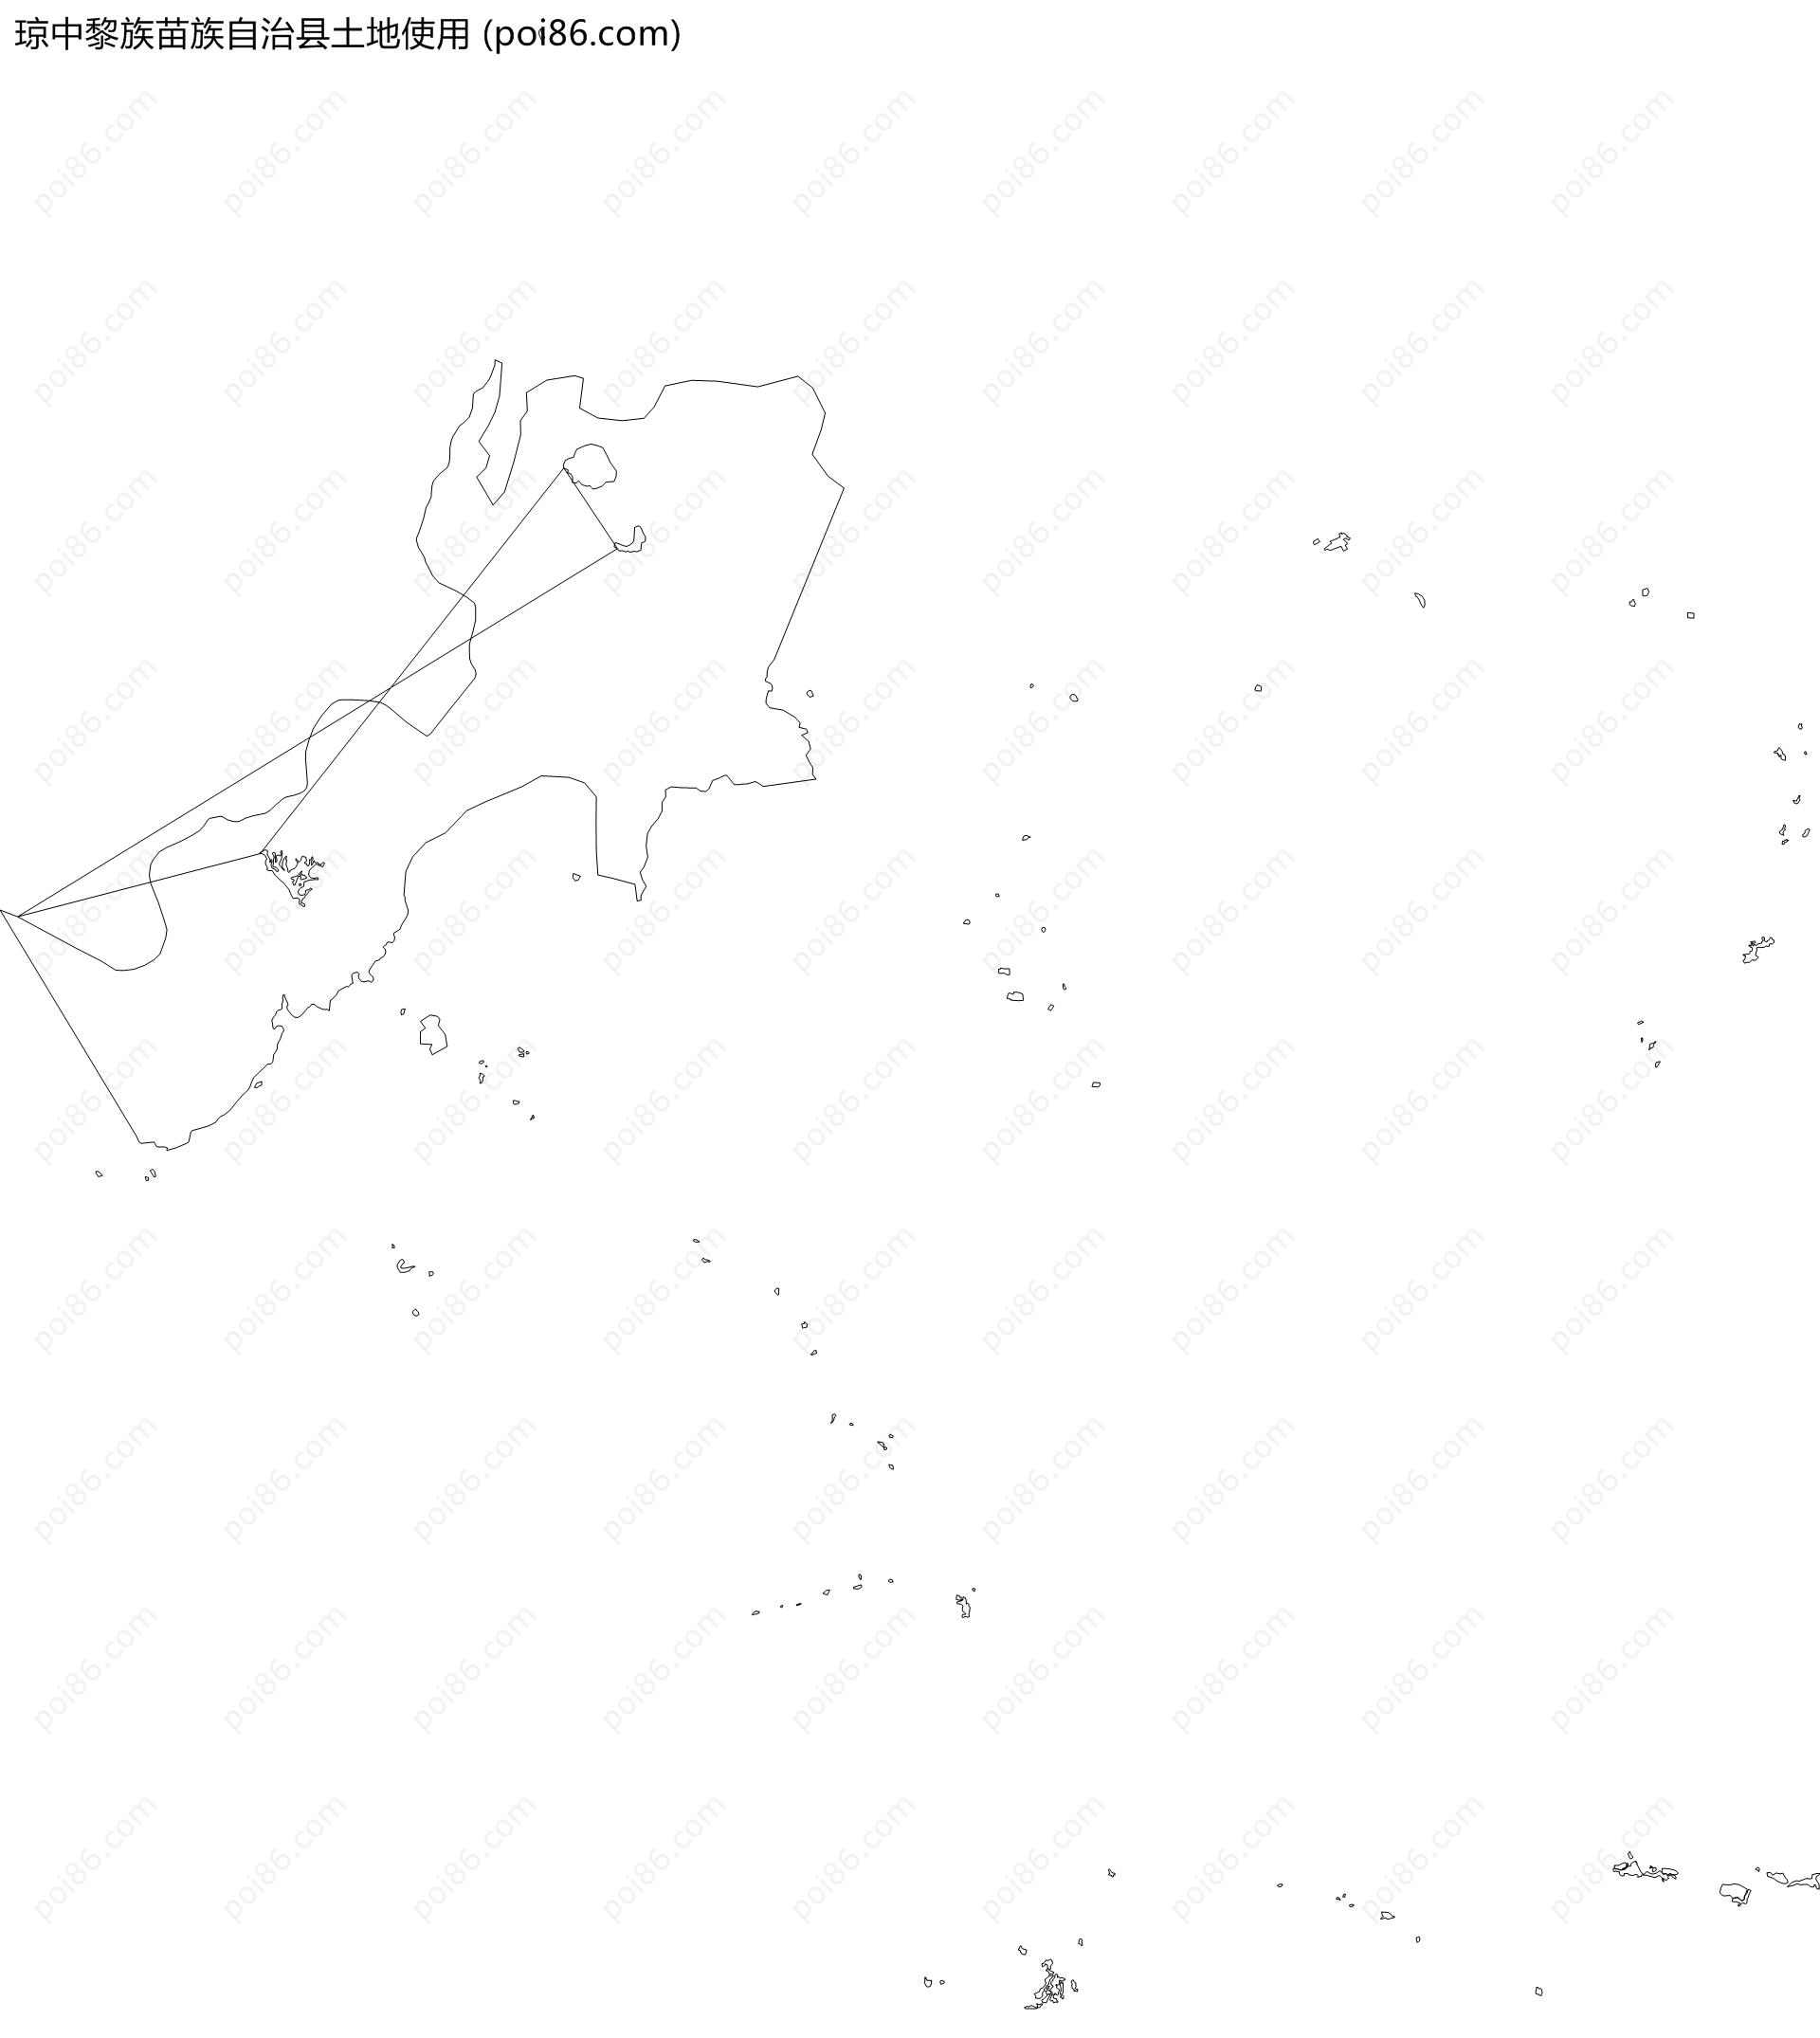 琼中黎族苗族自治县土地使用地图